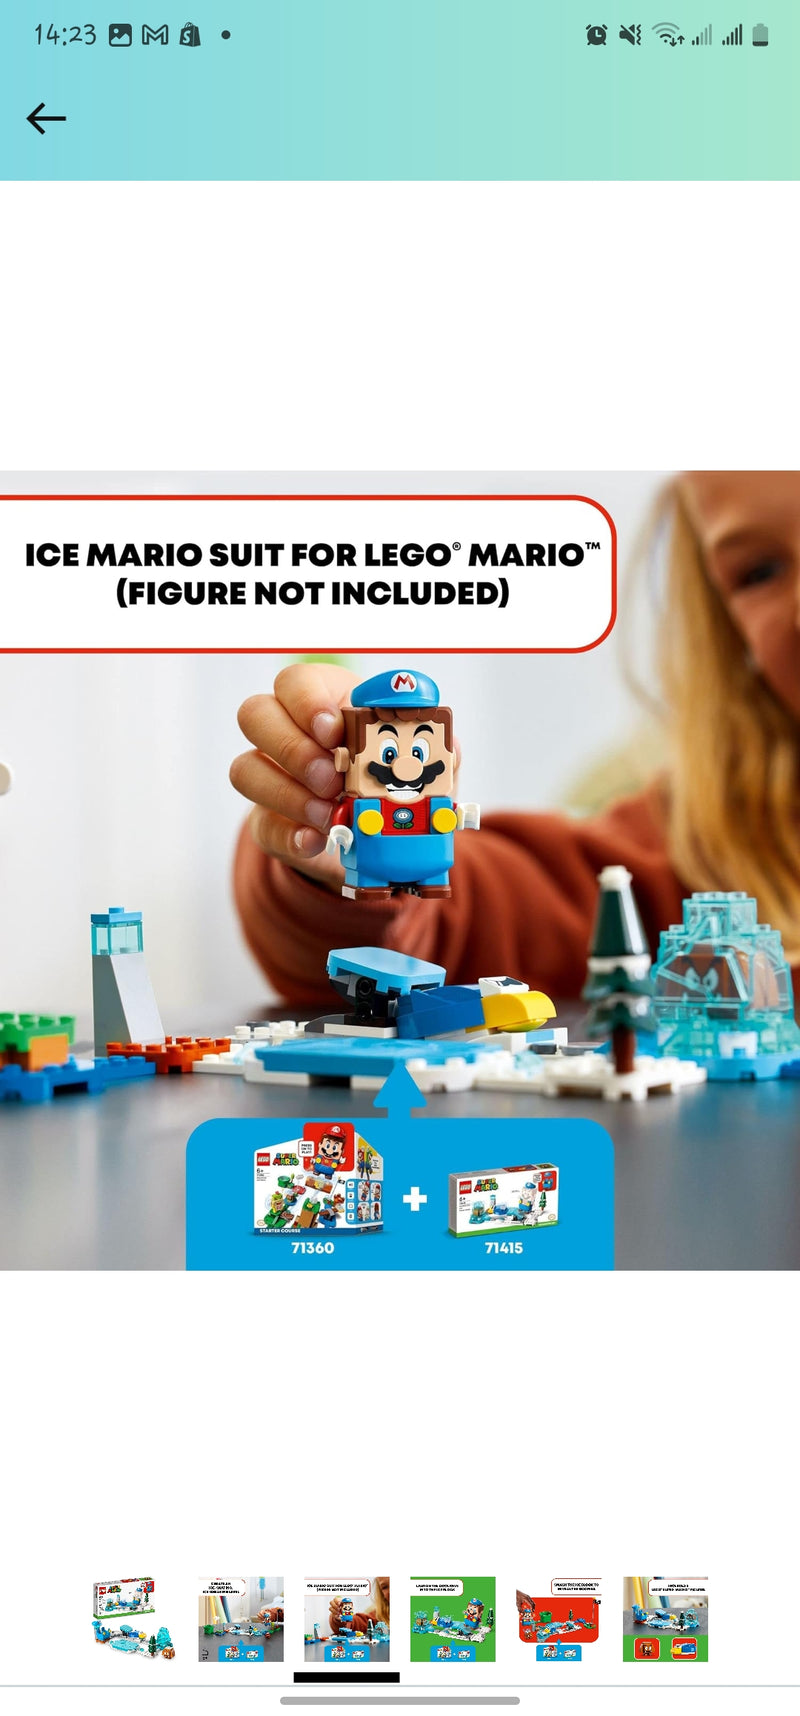 LEGO SUPER MARIO - PACOTE DE EXPANSÃO - TRAJE MARIO DE GELO E MUNDO GELADO 71415